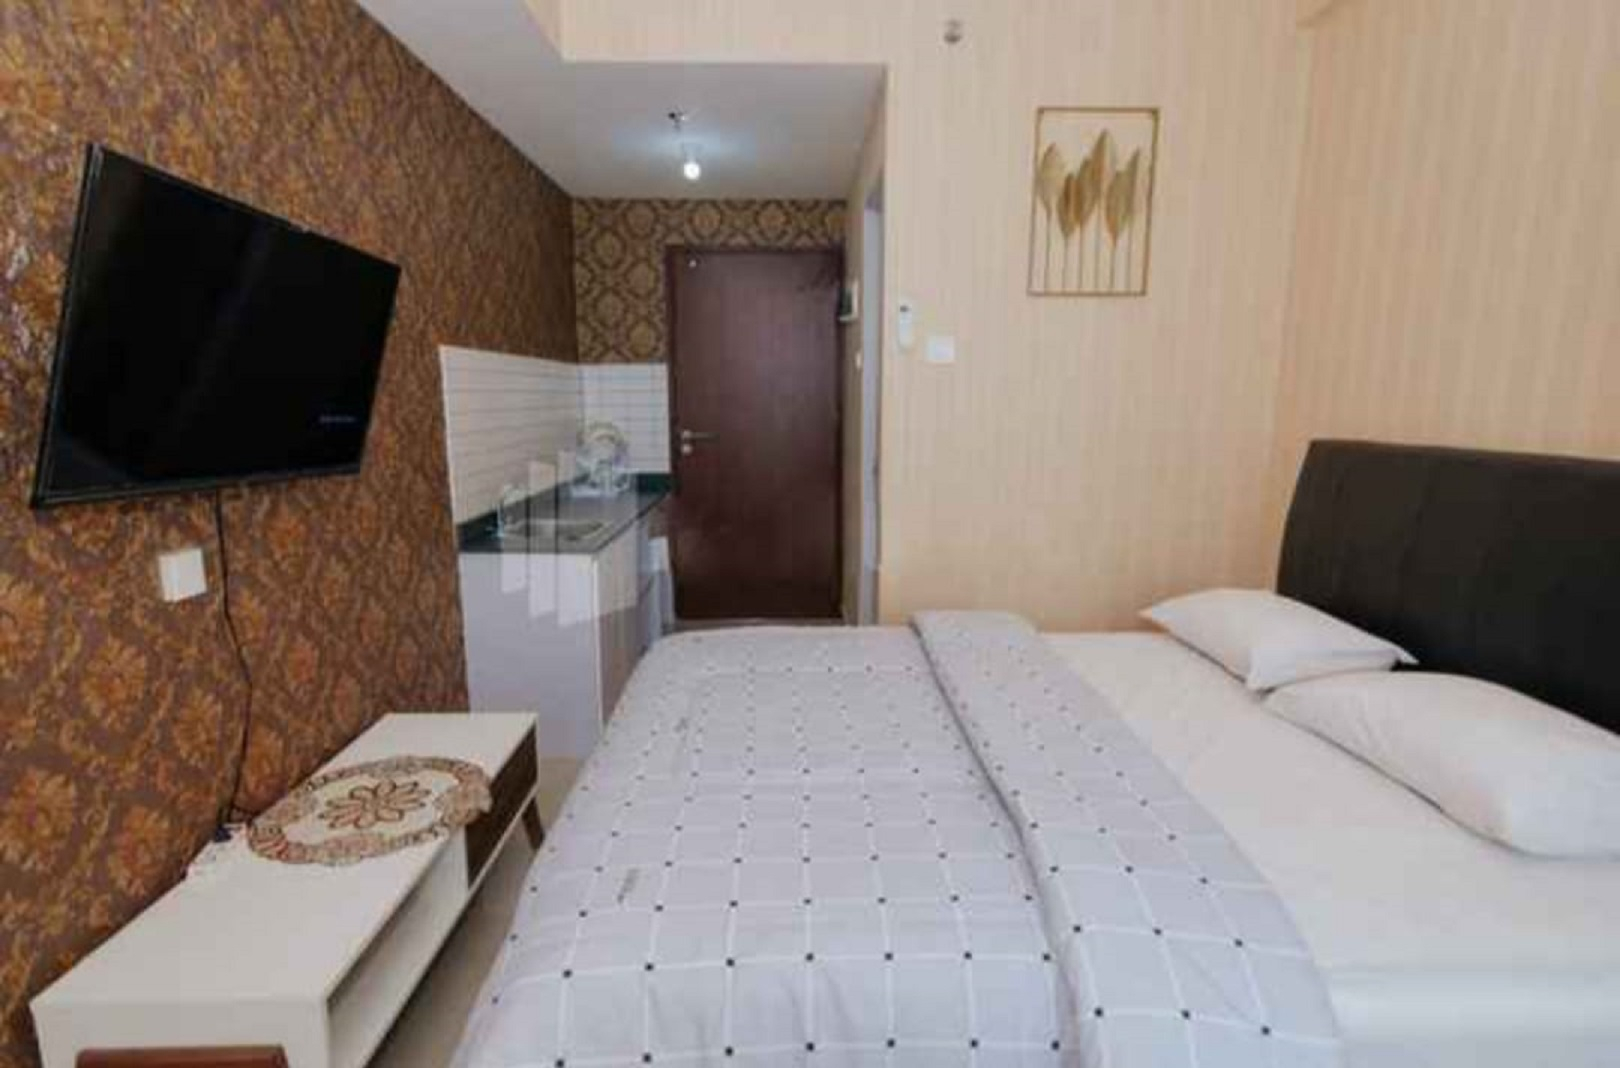 Apartemen Sayana Harapan Indah by Welcome Property, Bekasi